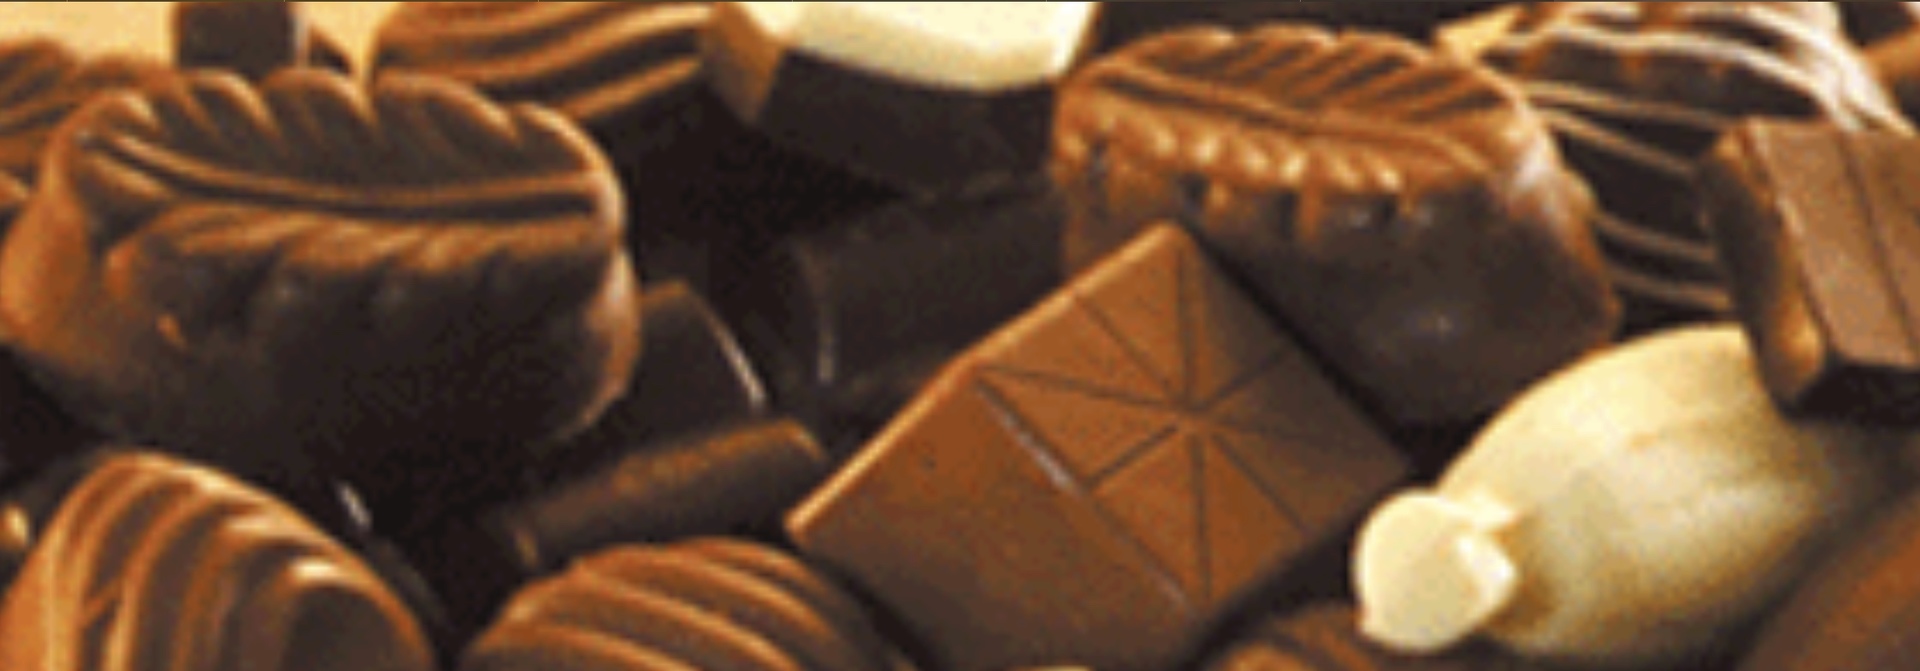 ベリーズのチョコレート